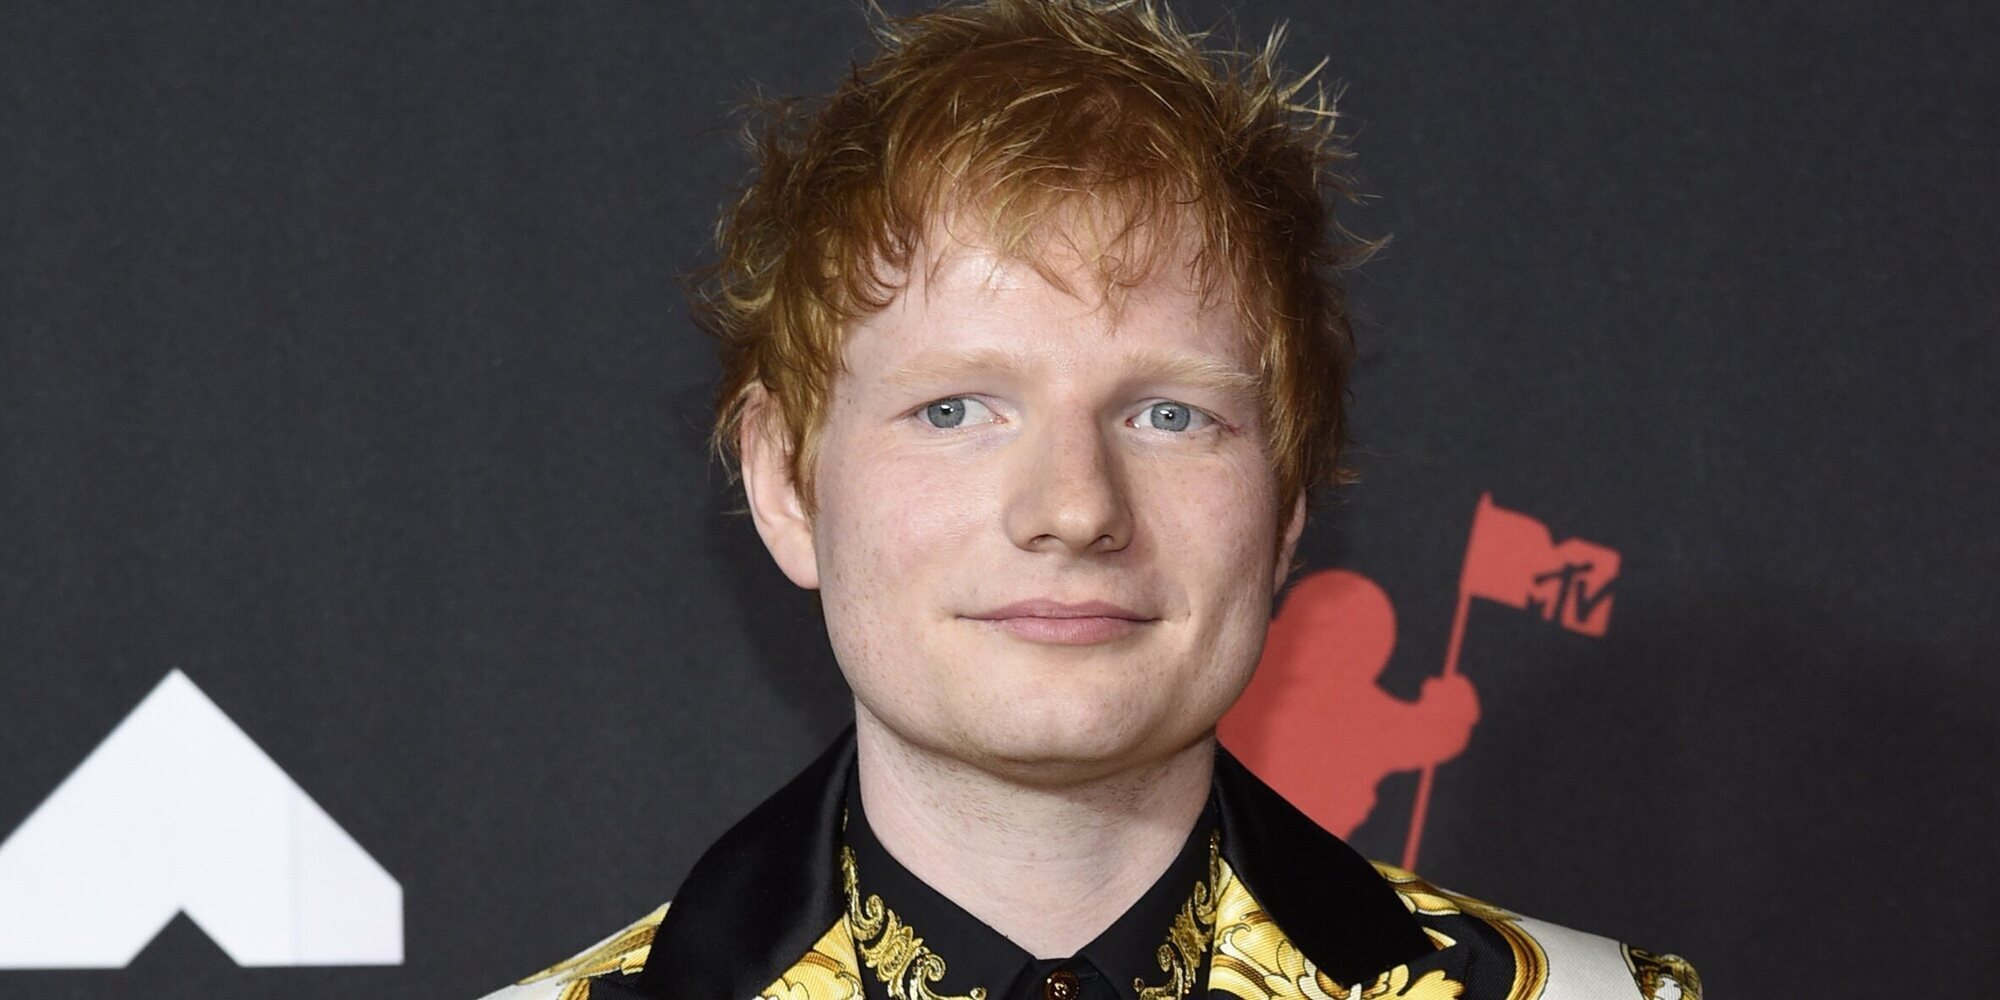 Ed Sheeran anuncia que ha dado positivo en Covid: "Estoy aislado y siguiendo las pautas"